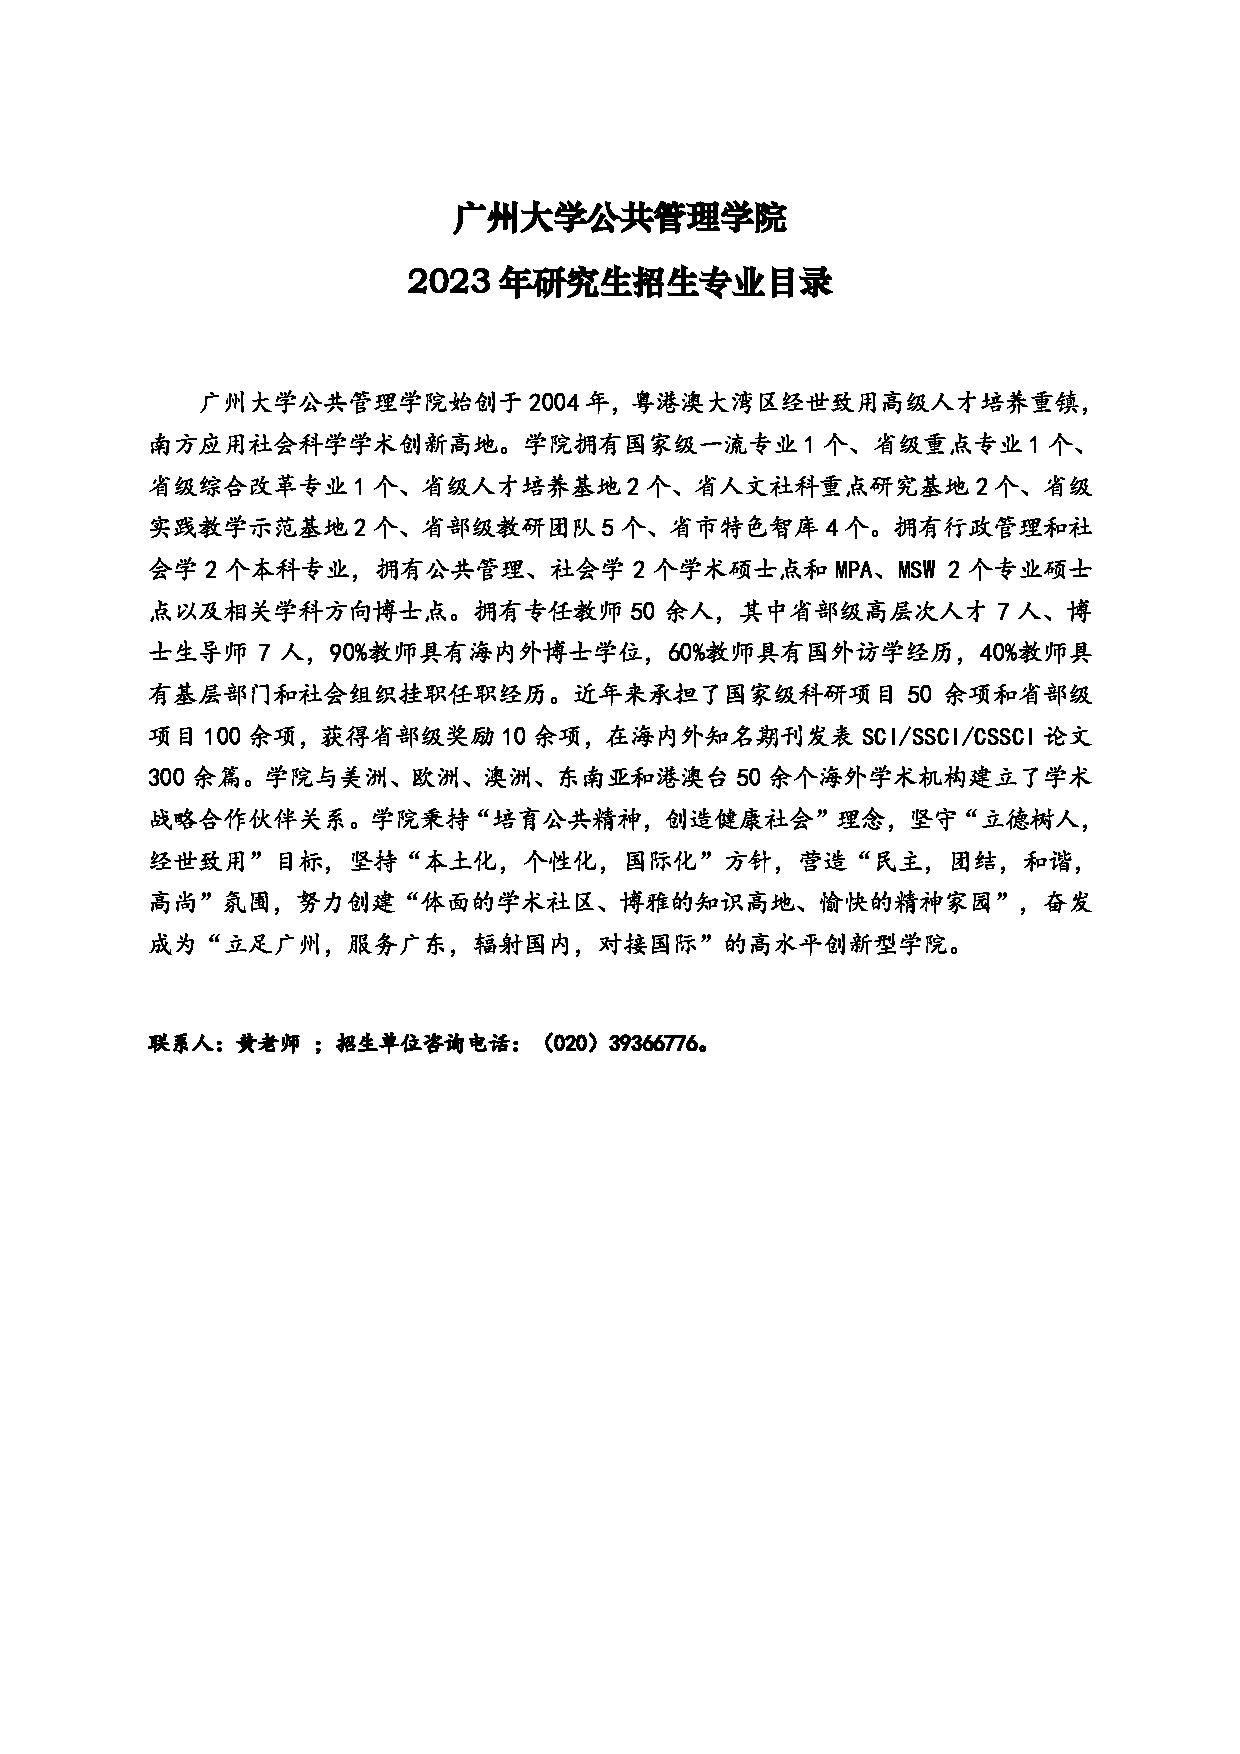 2023招生目录：广州大学2023年  10公共管理学院 研究生考试招生目录第1页